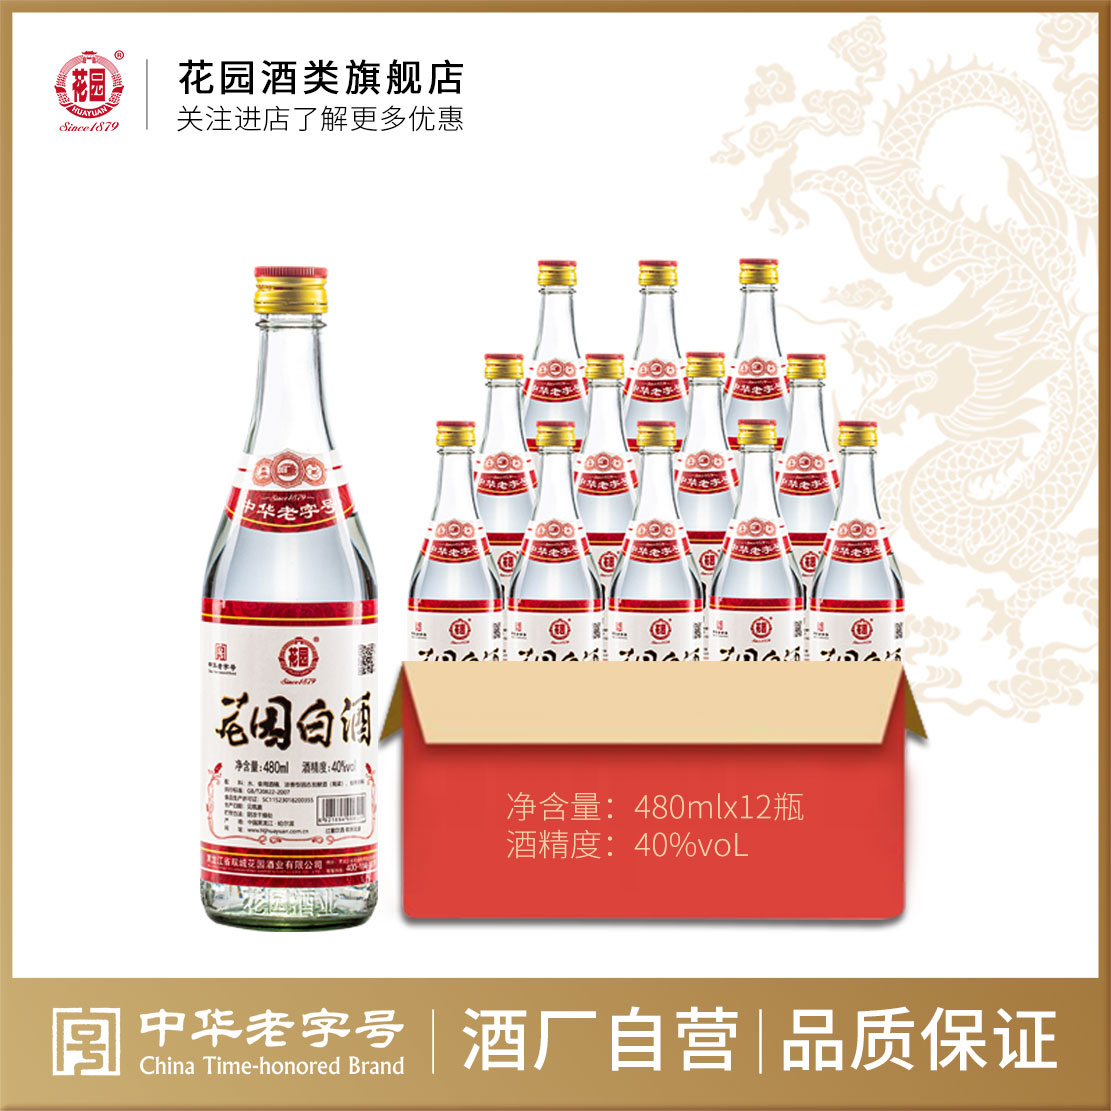 【中华老字号】双城花园白酒 40度 浓香型 东北白酒 480ml每瓶